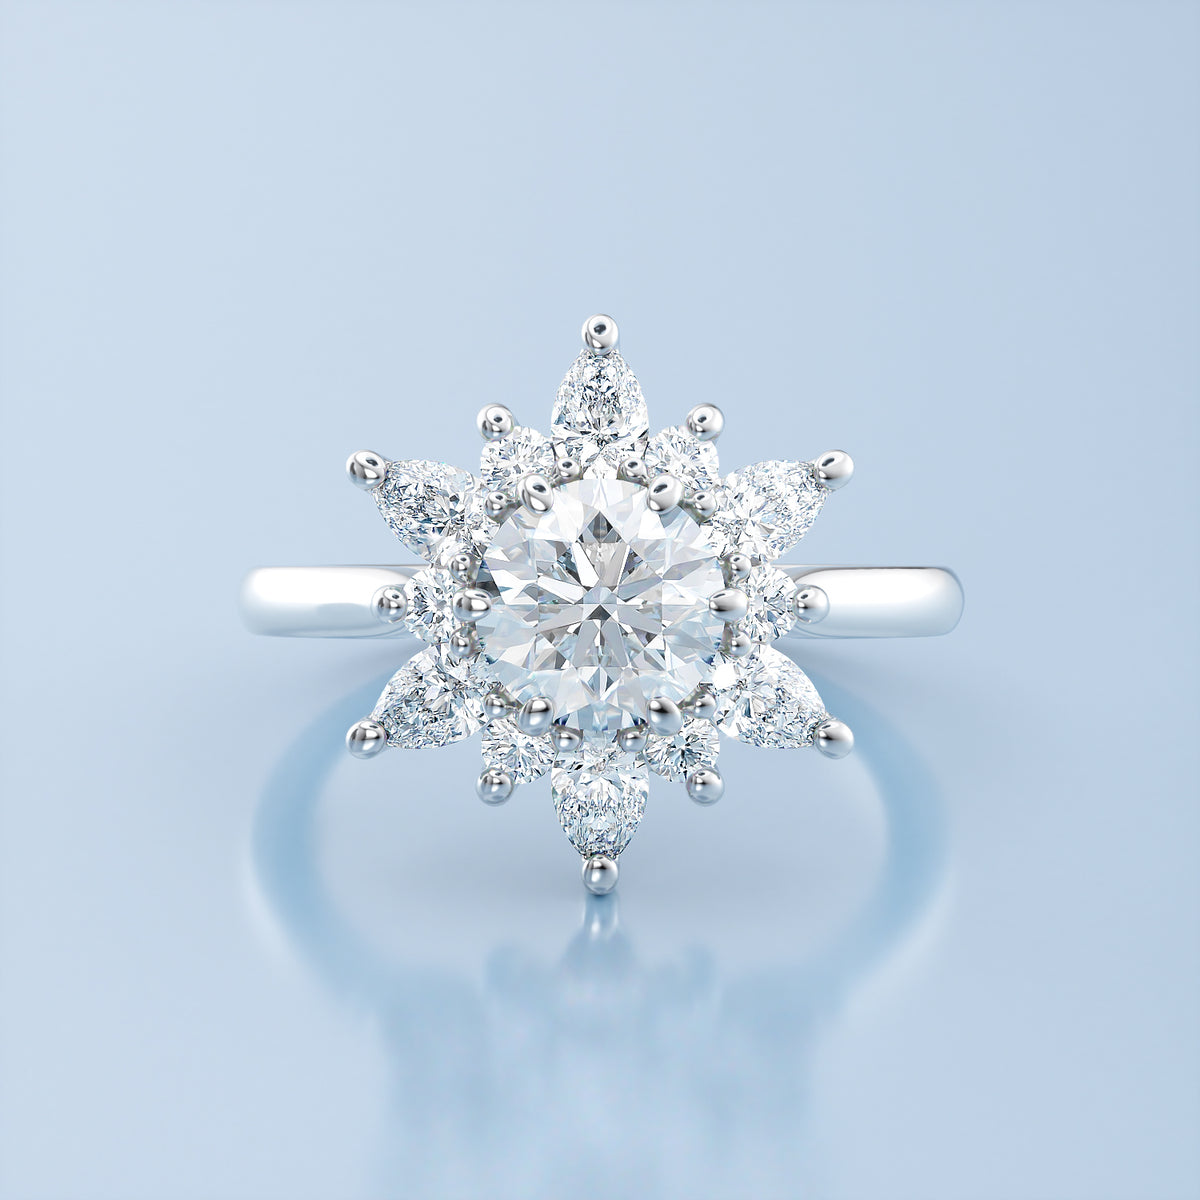 Mixed Cut Snowflake Engagement Ring - Snowflake North Star